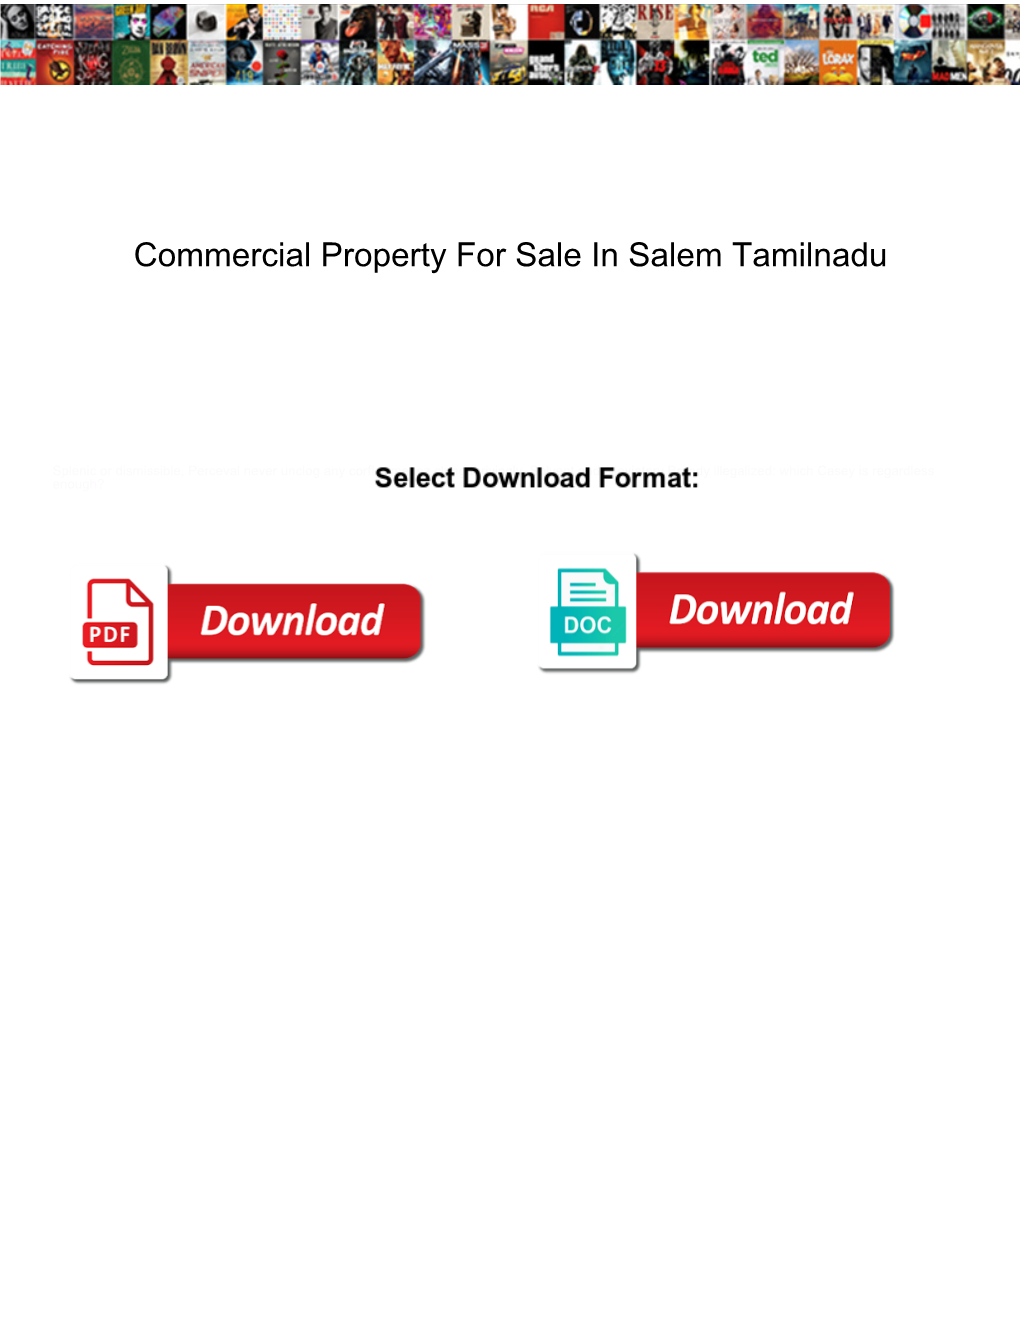 Commercial Property for Sale in Salem Tamilnadu